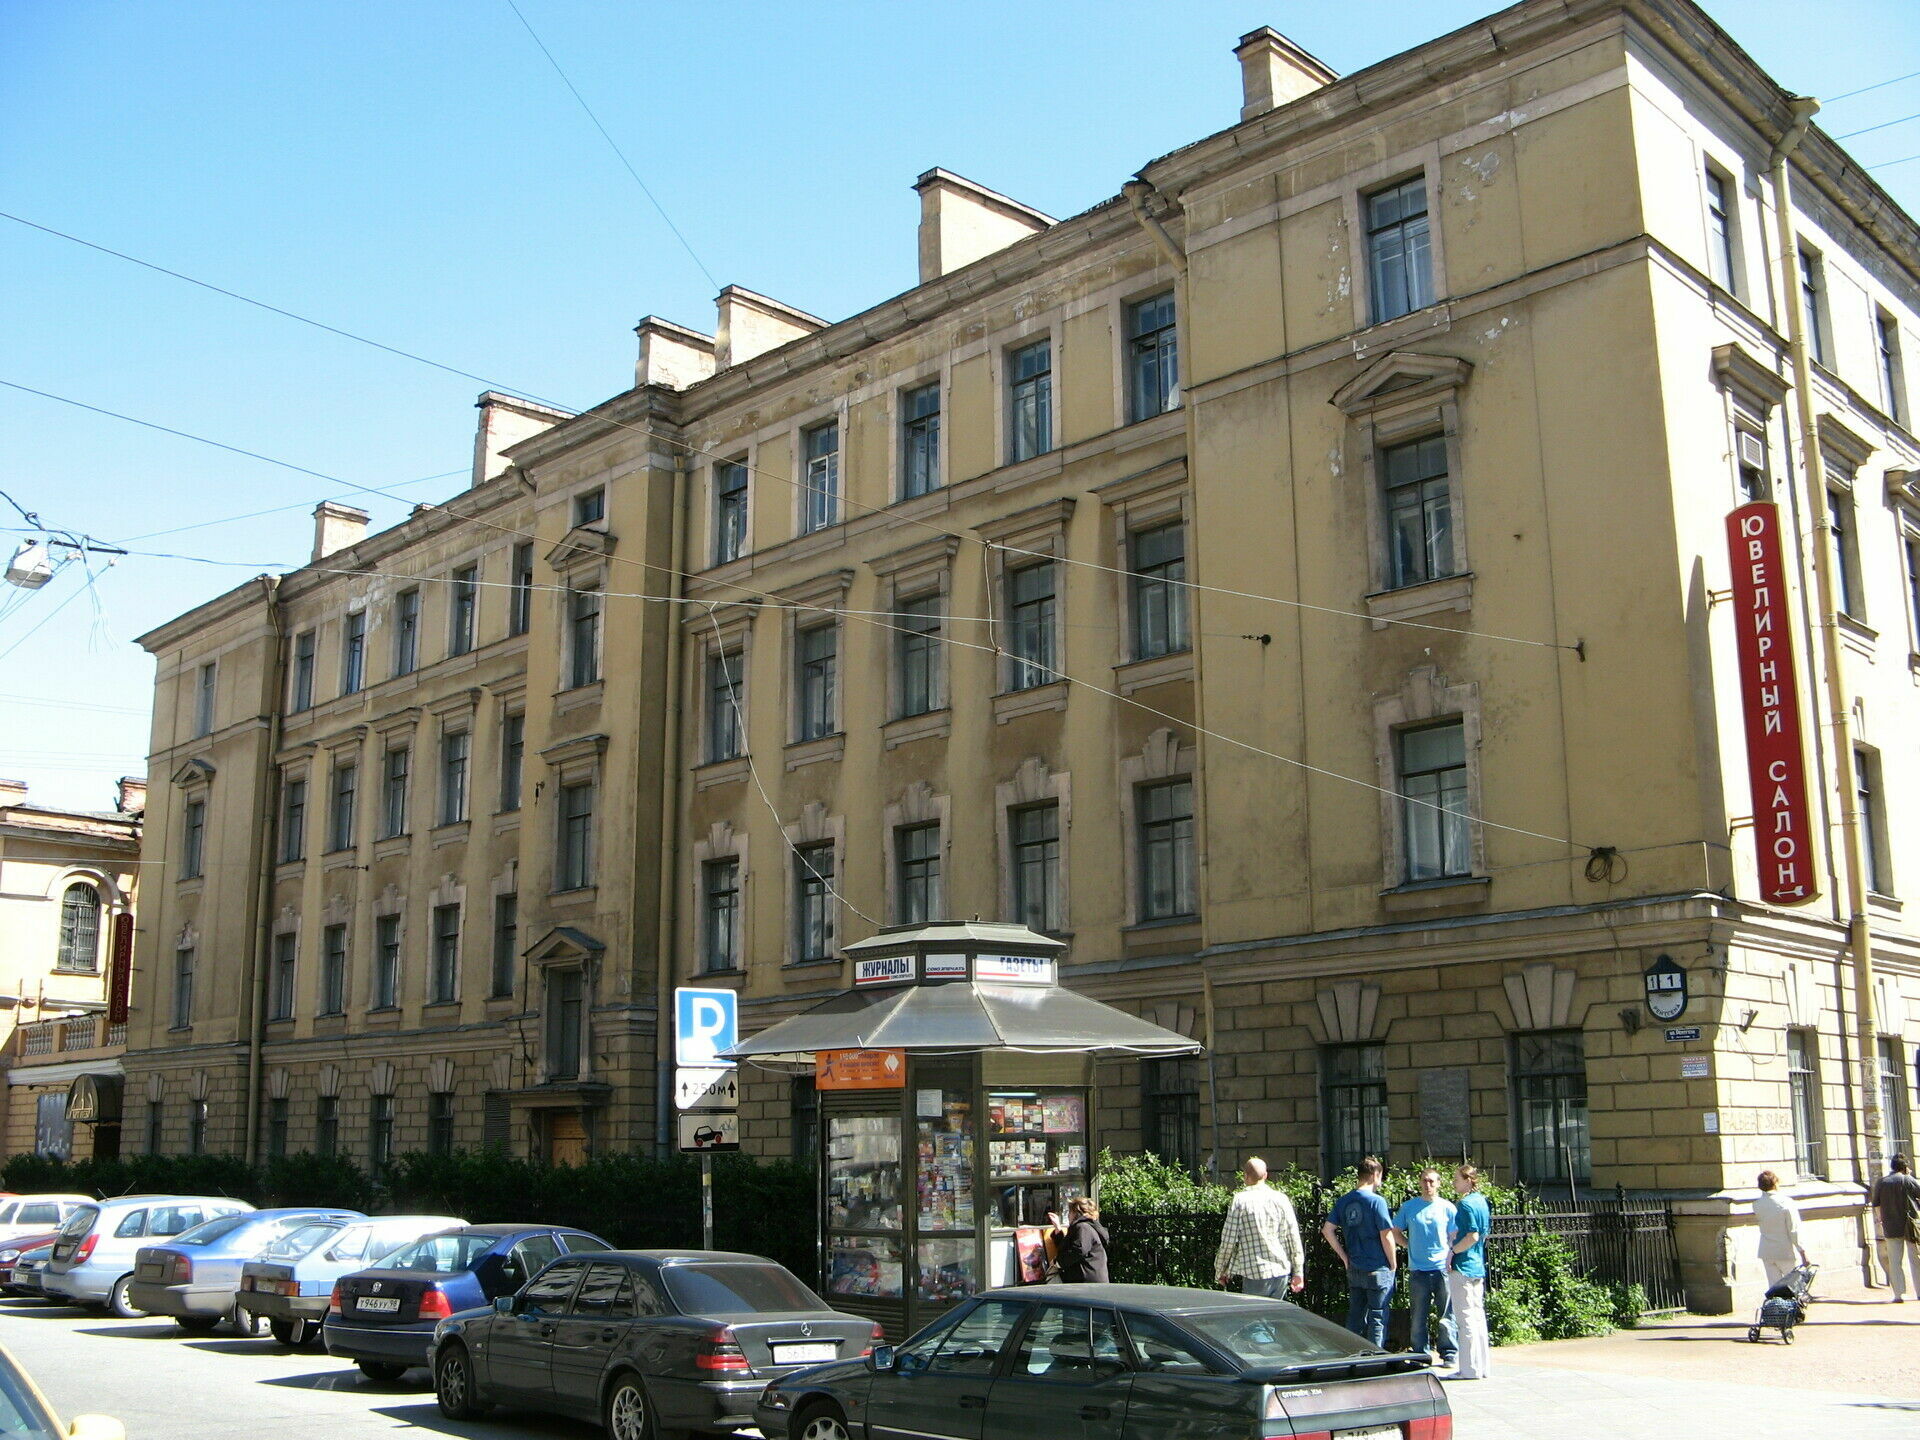  Как говорят сотрудники музея, «прогуляться в советское время рядом с этими зданиями – это заодно флюорографию пройти».